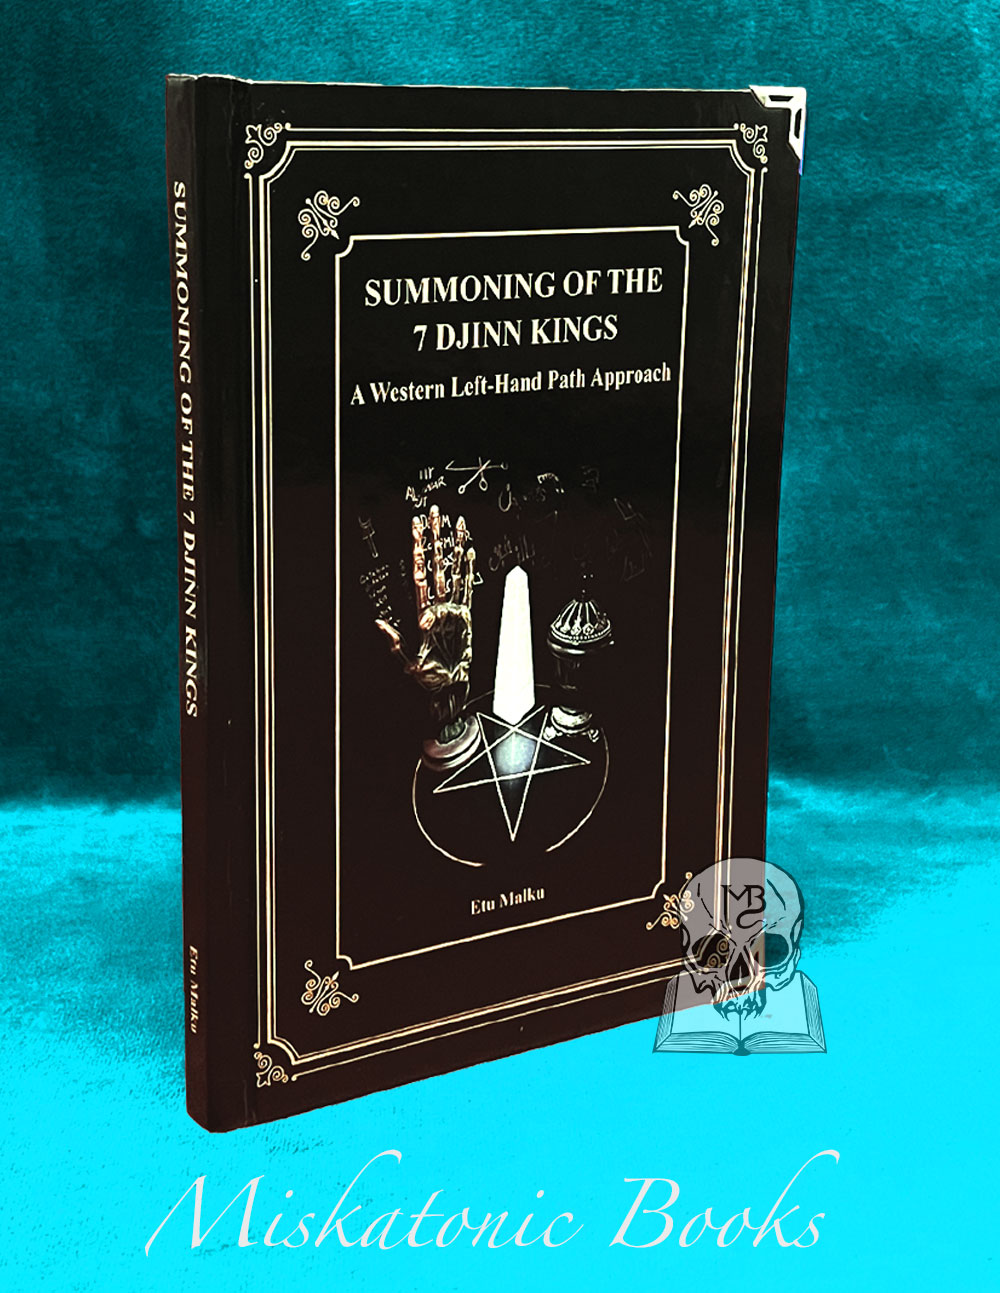 SUMMONING THE 7 DJINN KINGS by Etu Malku - Limited Edition with Altar Cloth